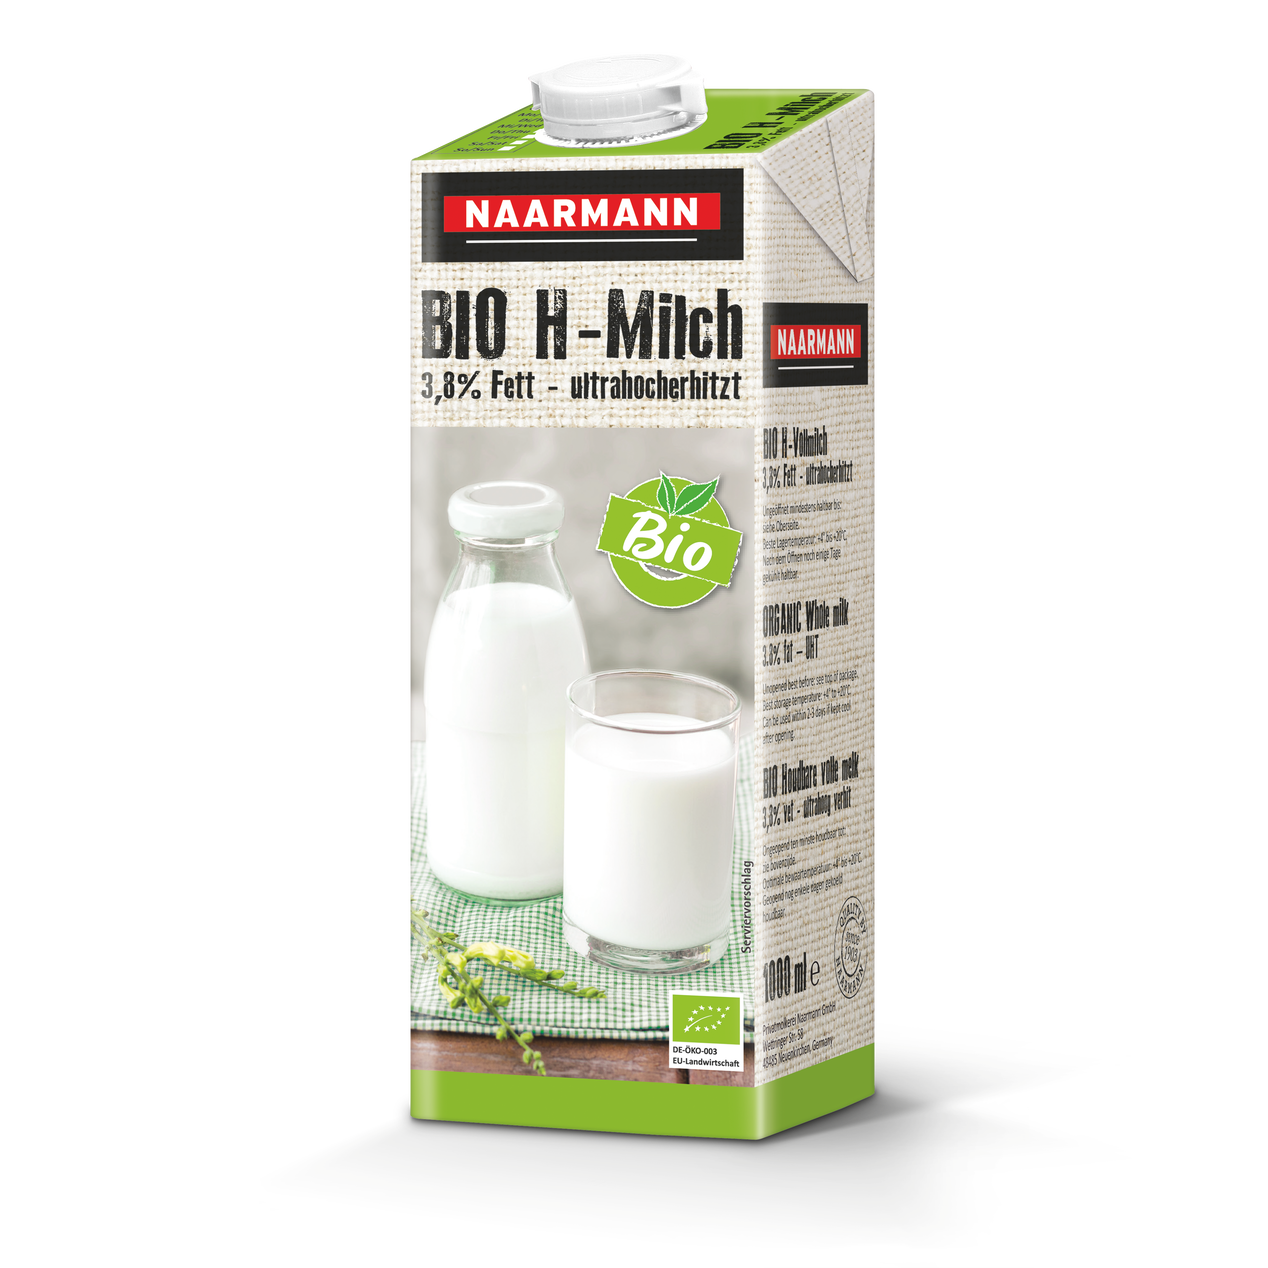 Bio H-Milch 3,8% - Packshot